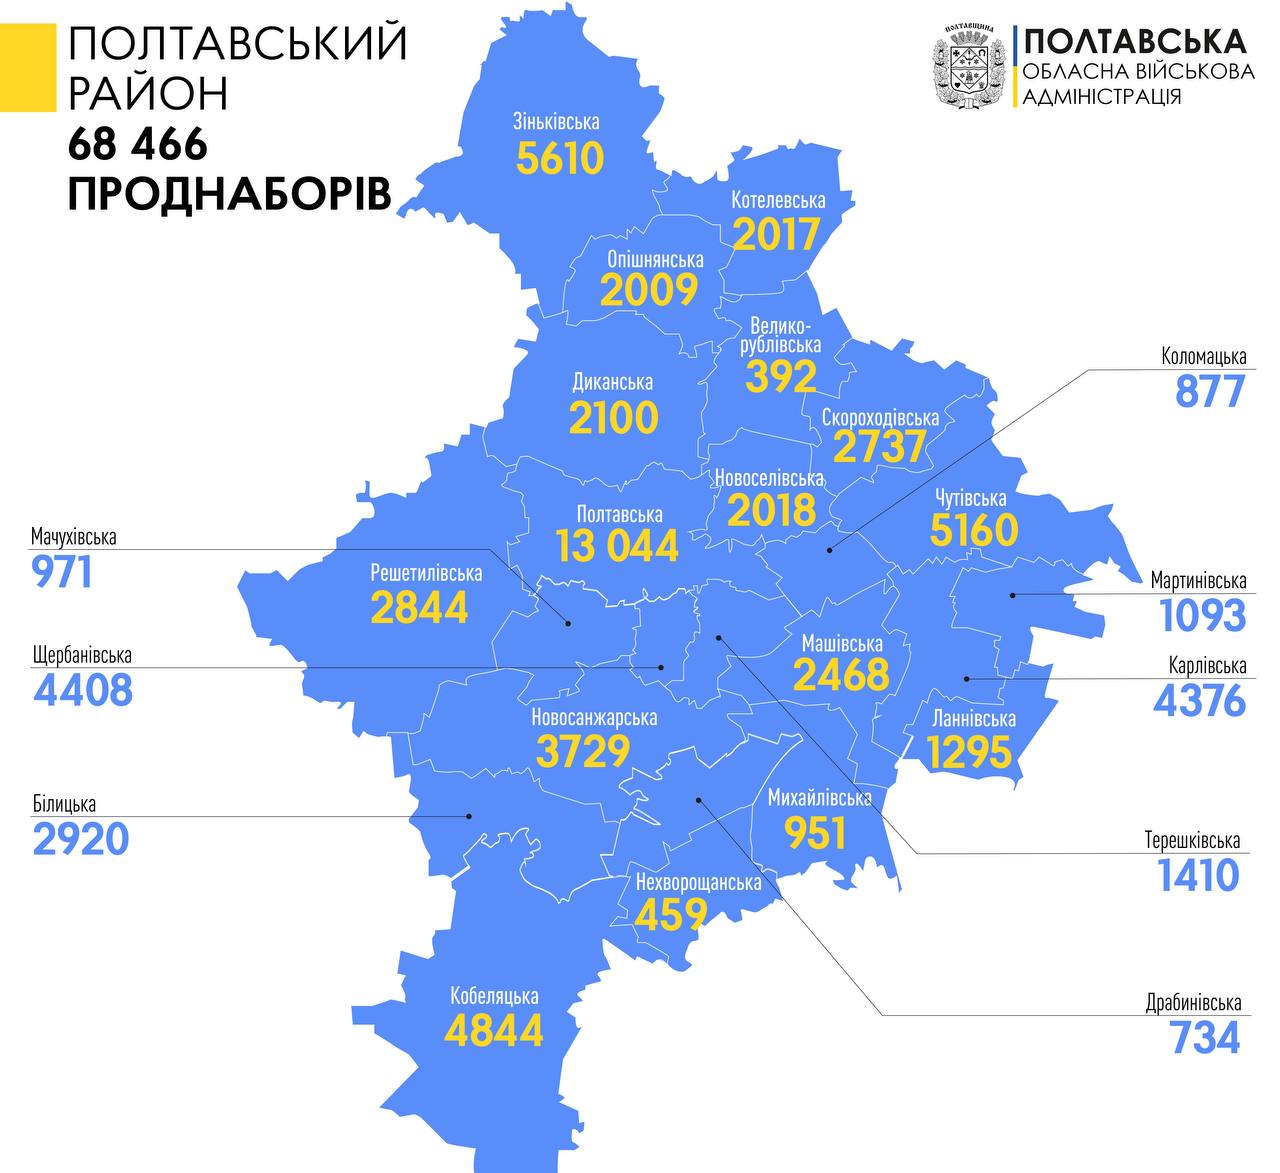 Більше 68 тисяч продуктових наборів отримали переселенці в Полтавському районі